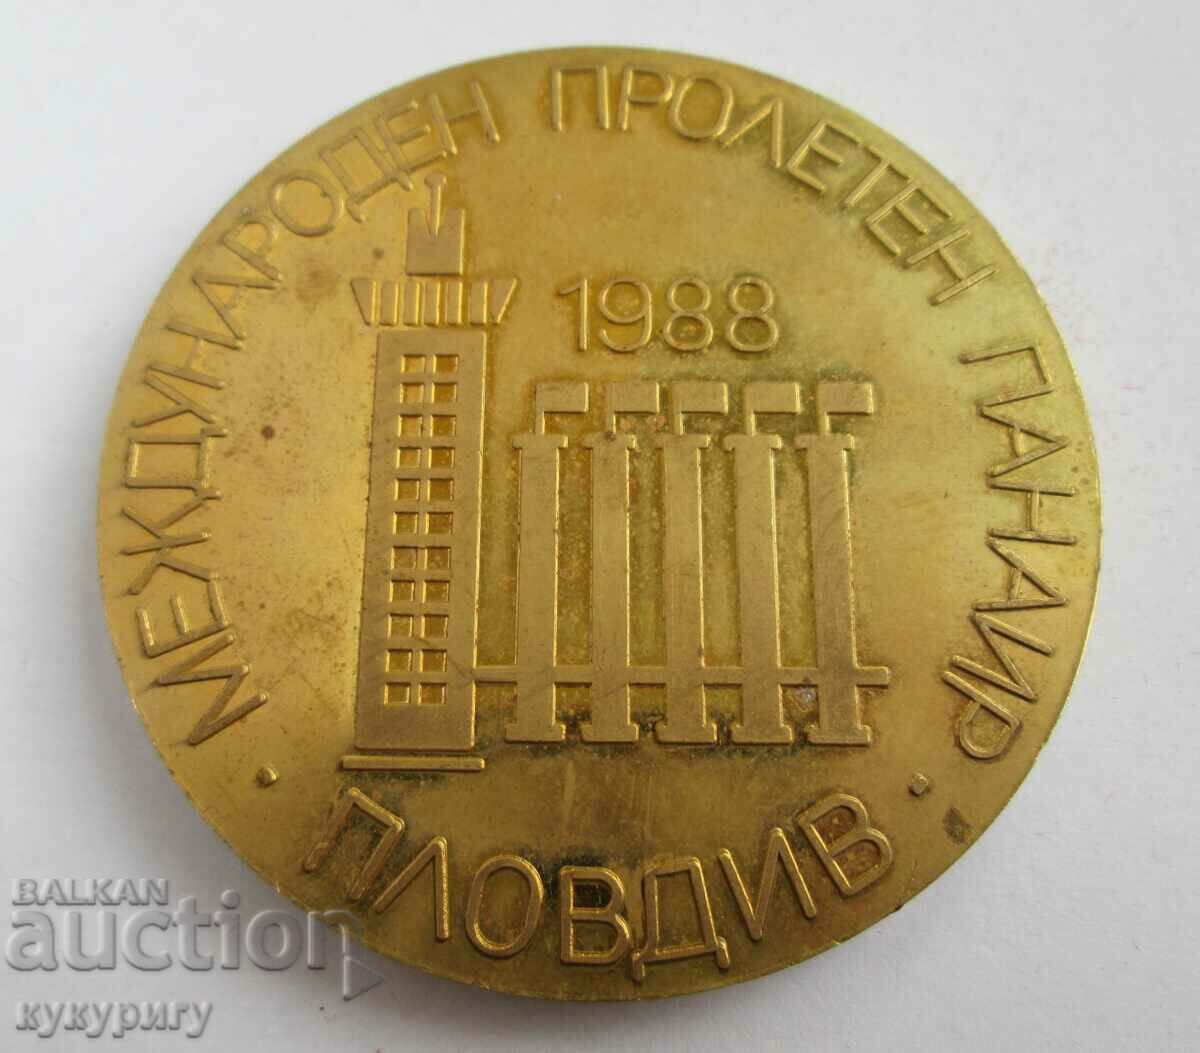 Σήμα τιμής μετάλλου με πλακέτα Ανοιξιάτικη Έκθεση Πλόβντιβ 1988